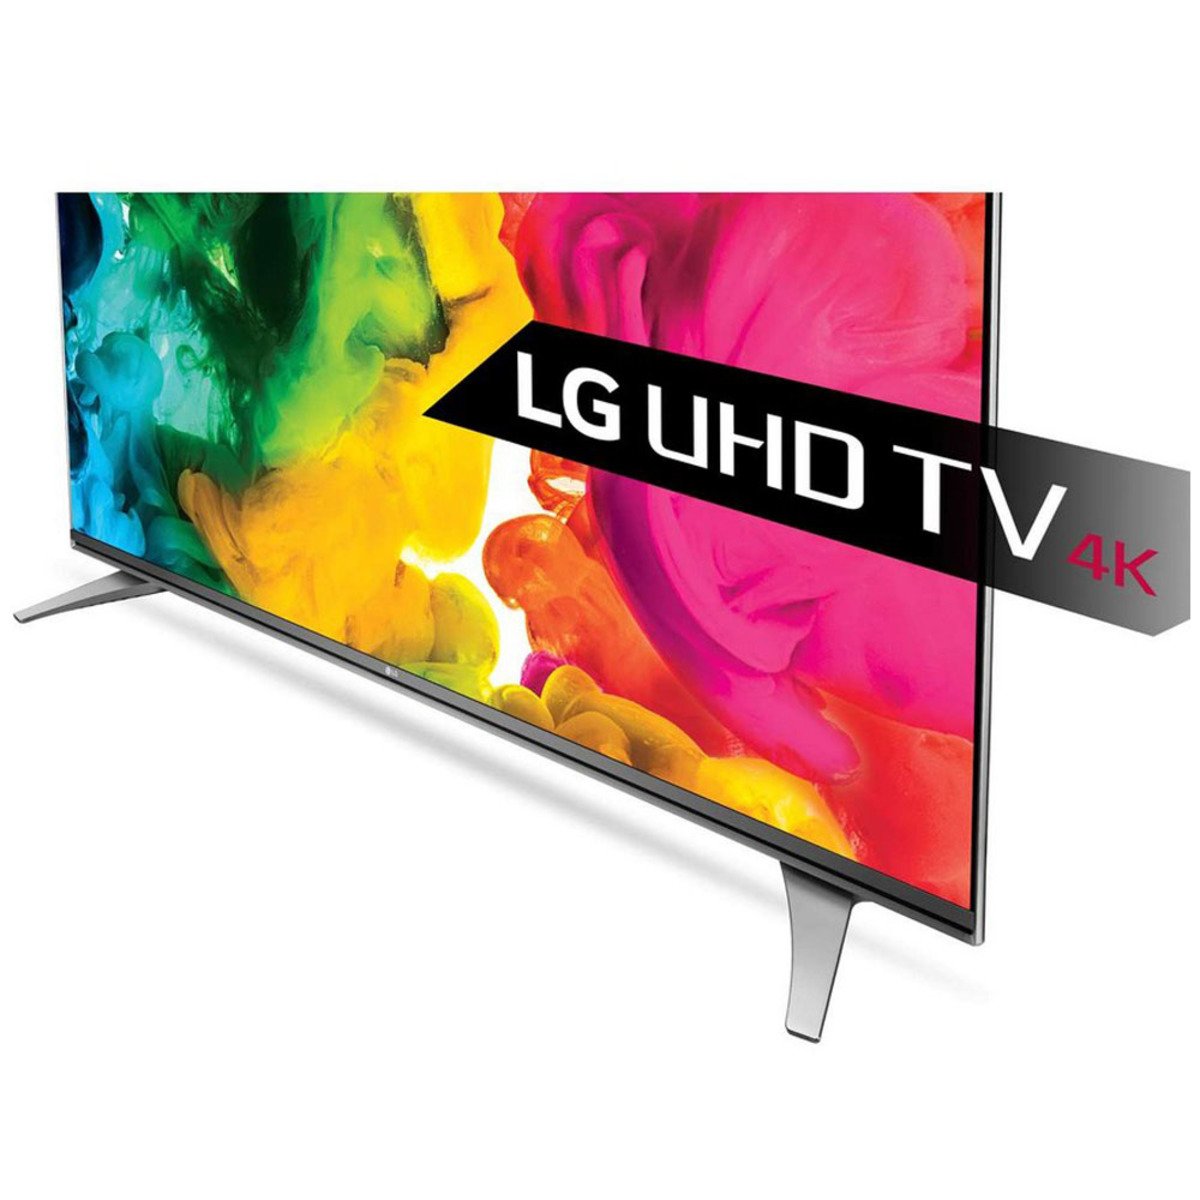 Lg Ultra Hd Smart Led Tv 55uh750v 55inch Online At Best Price 44 55 Lulu Ksa 2132